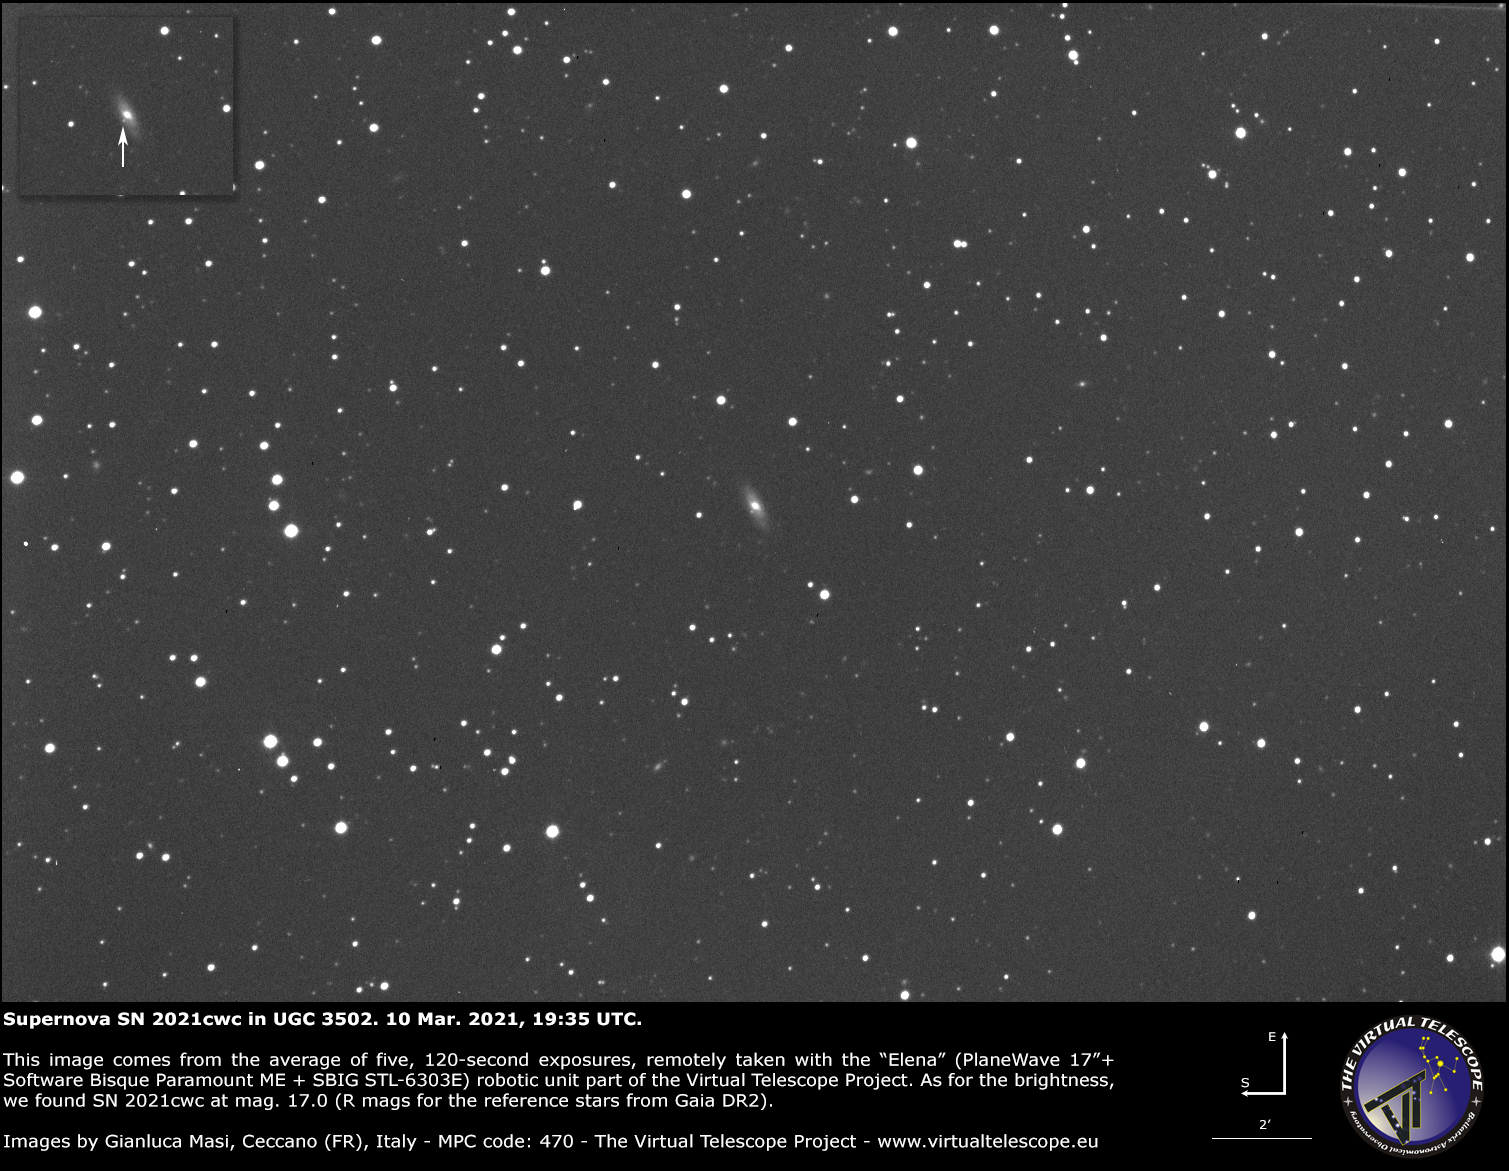 Supernova SN 2021cwc in UGC 3502 galaxy: 10 Mar. 2021.